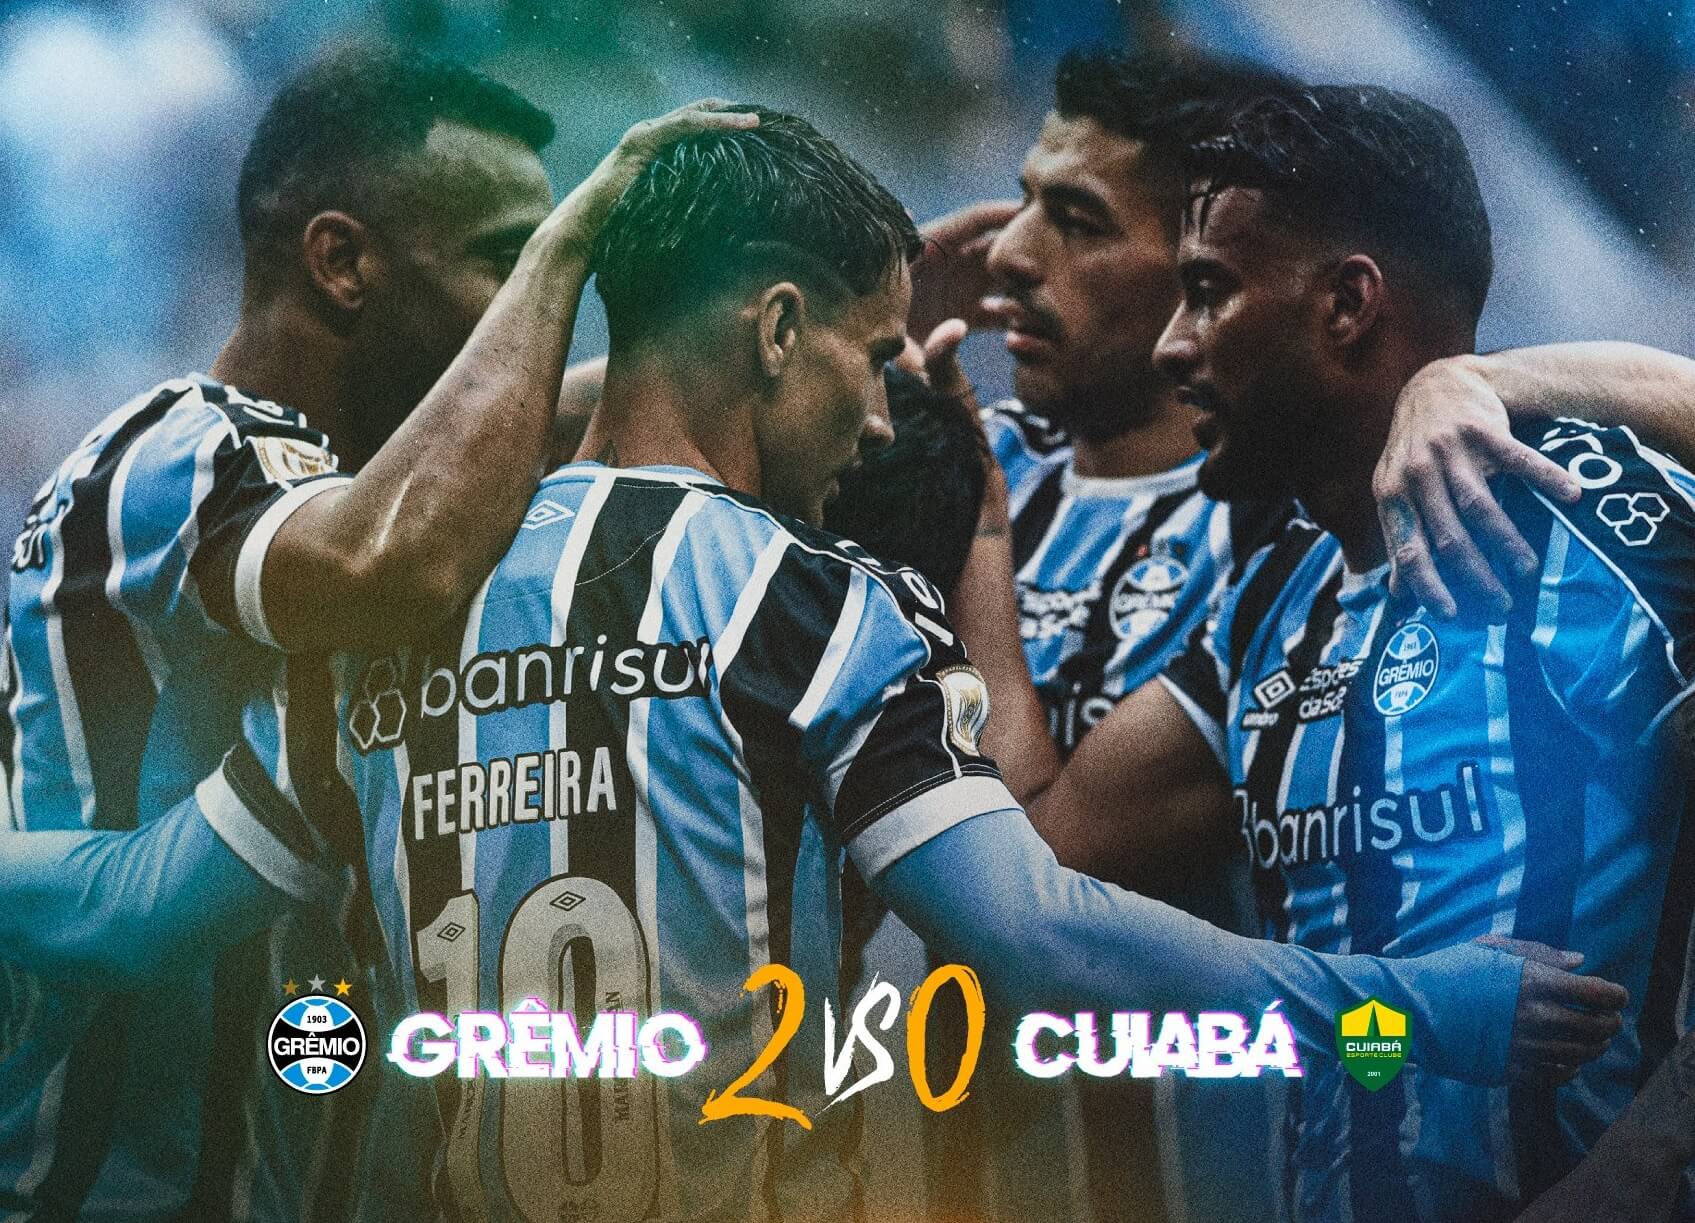 Grêmio vs Fortaleza: Clash of the Titans